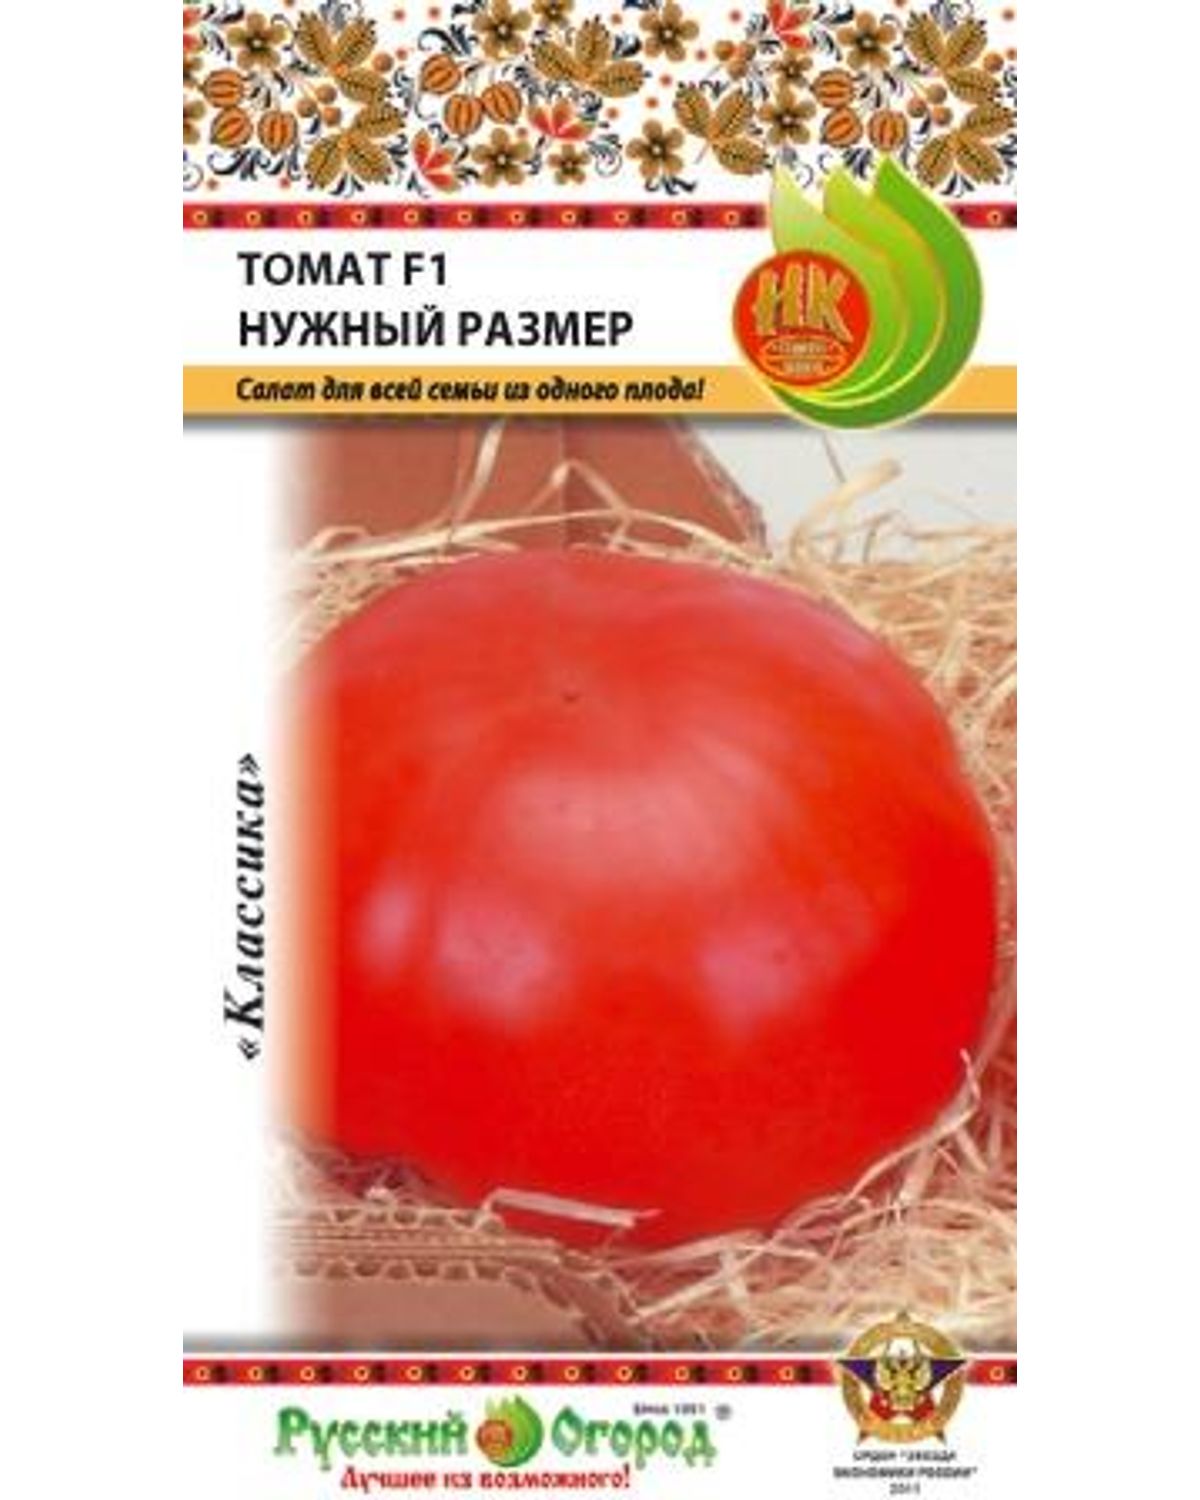 Русский огород томат нужный размер f1